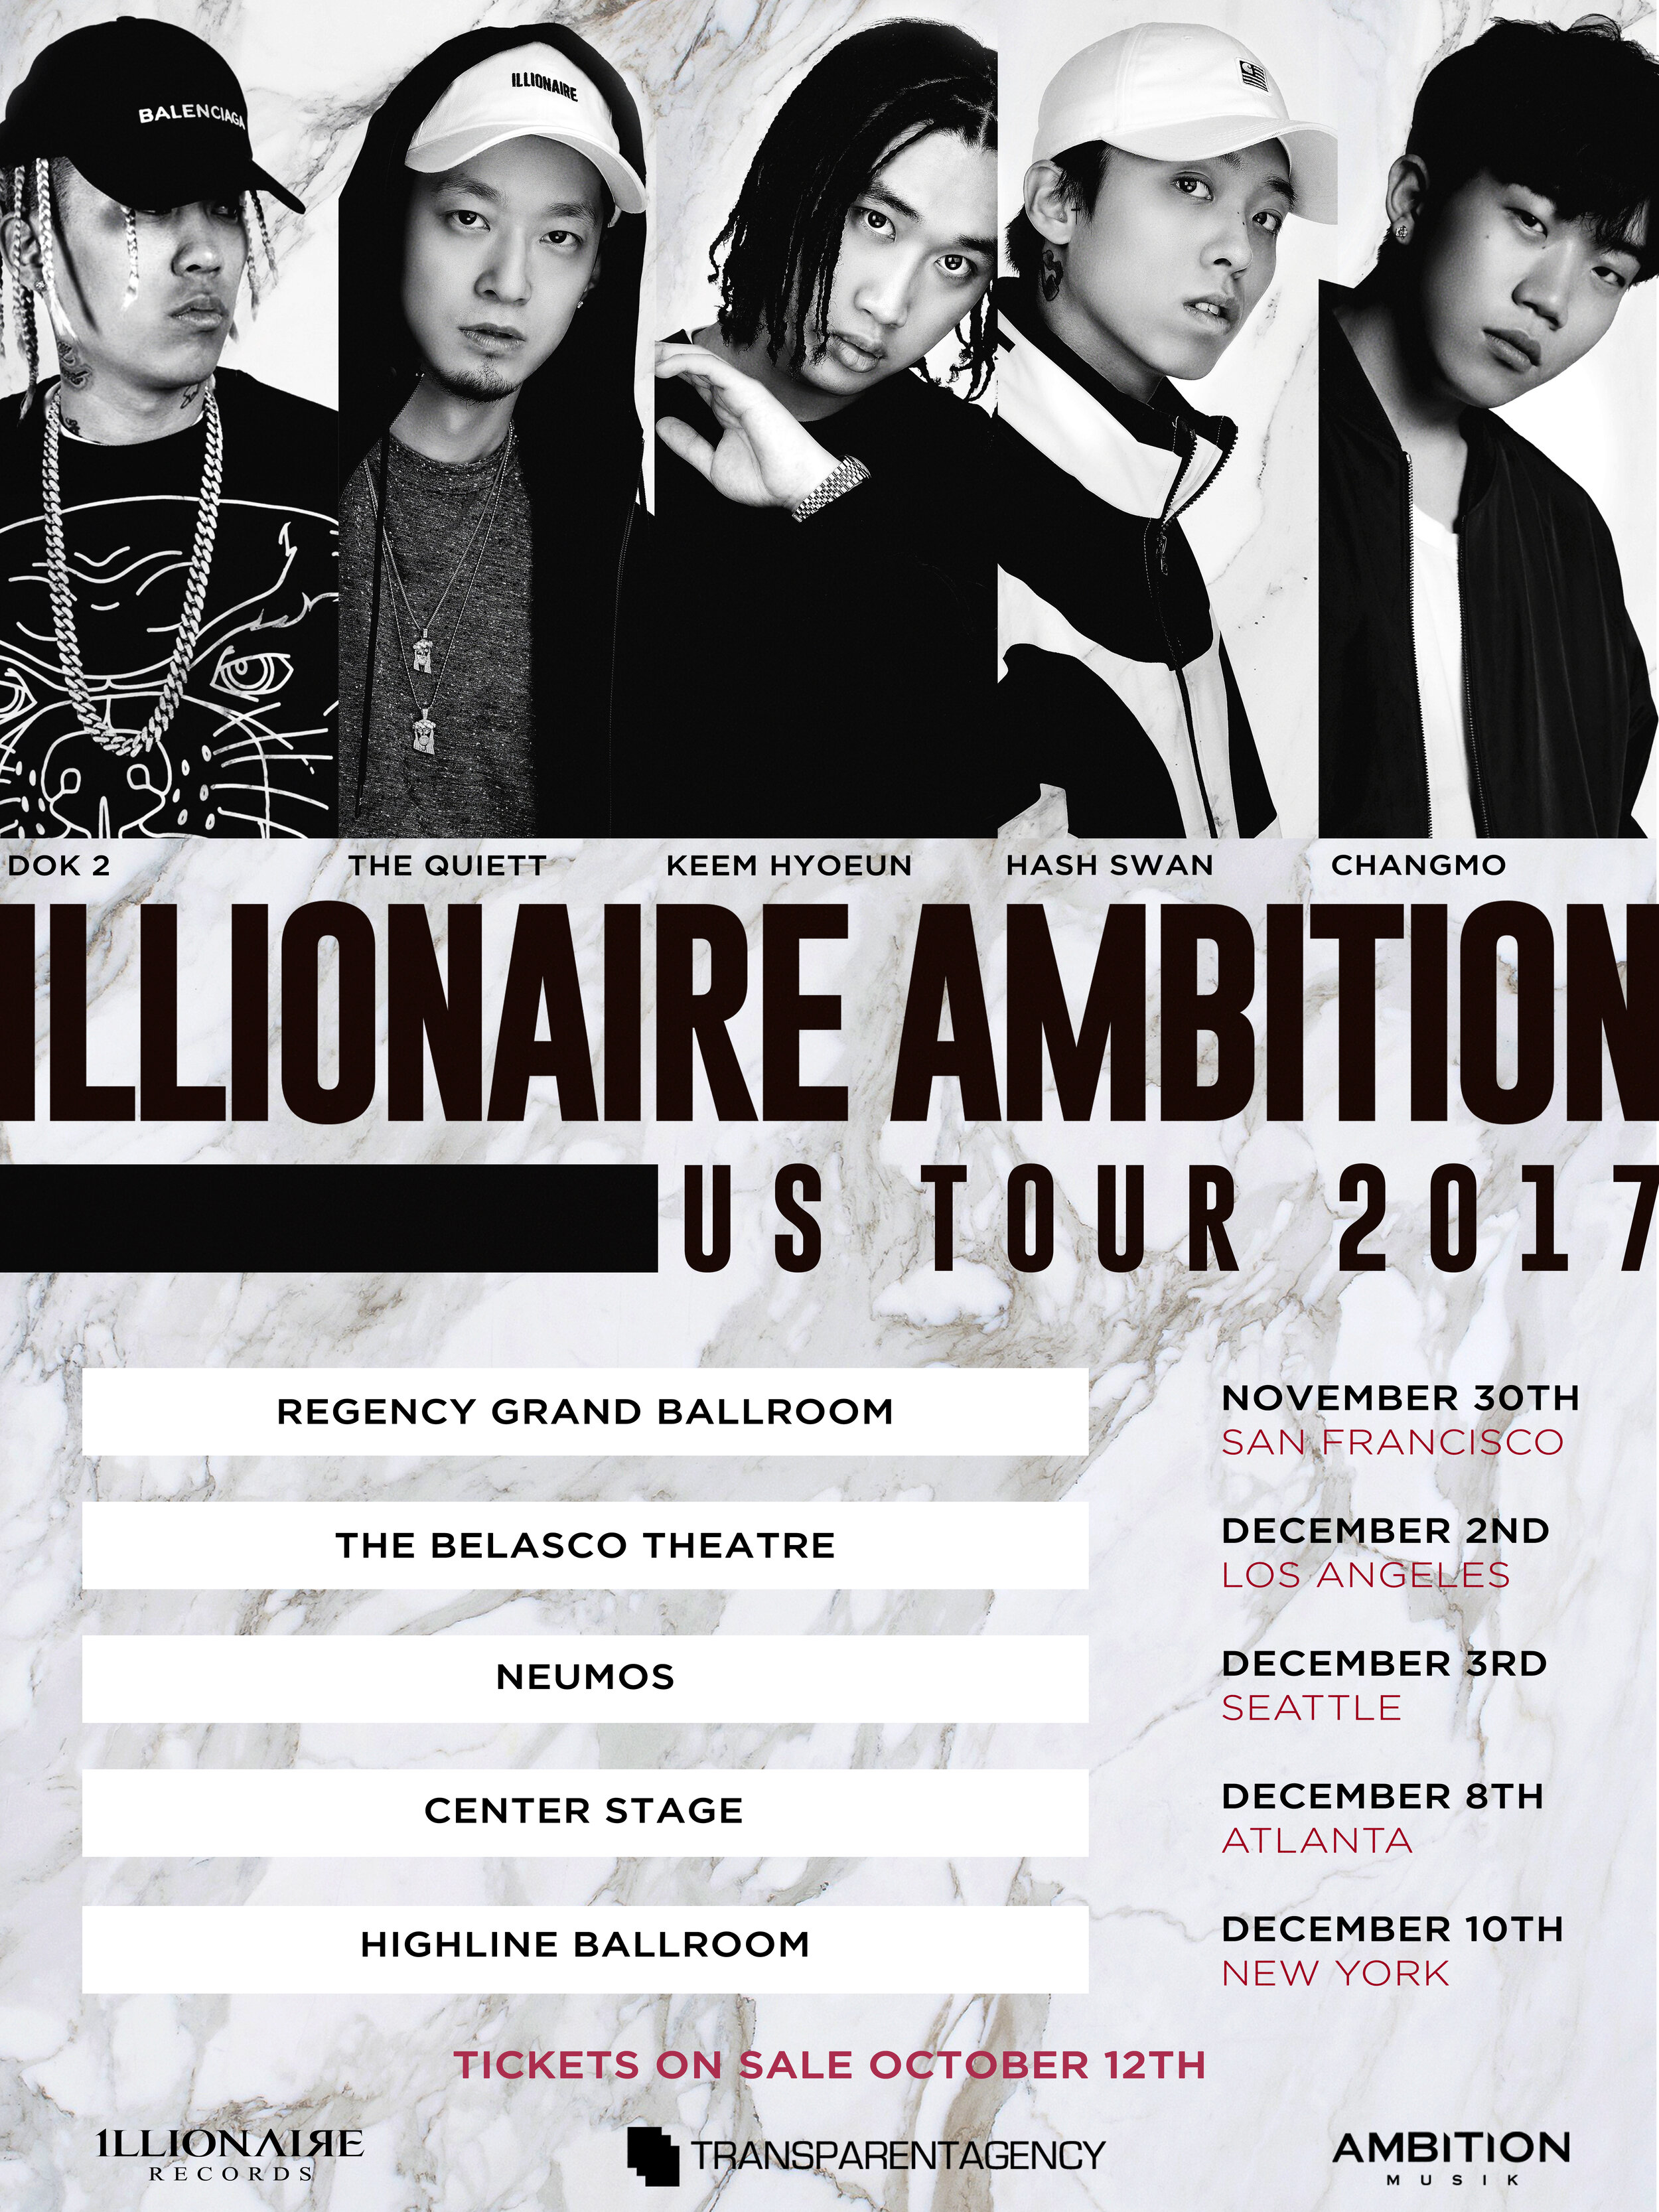 Illionaire Ambition US Tour 2017